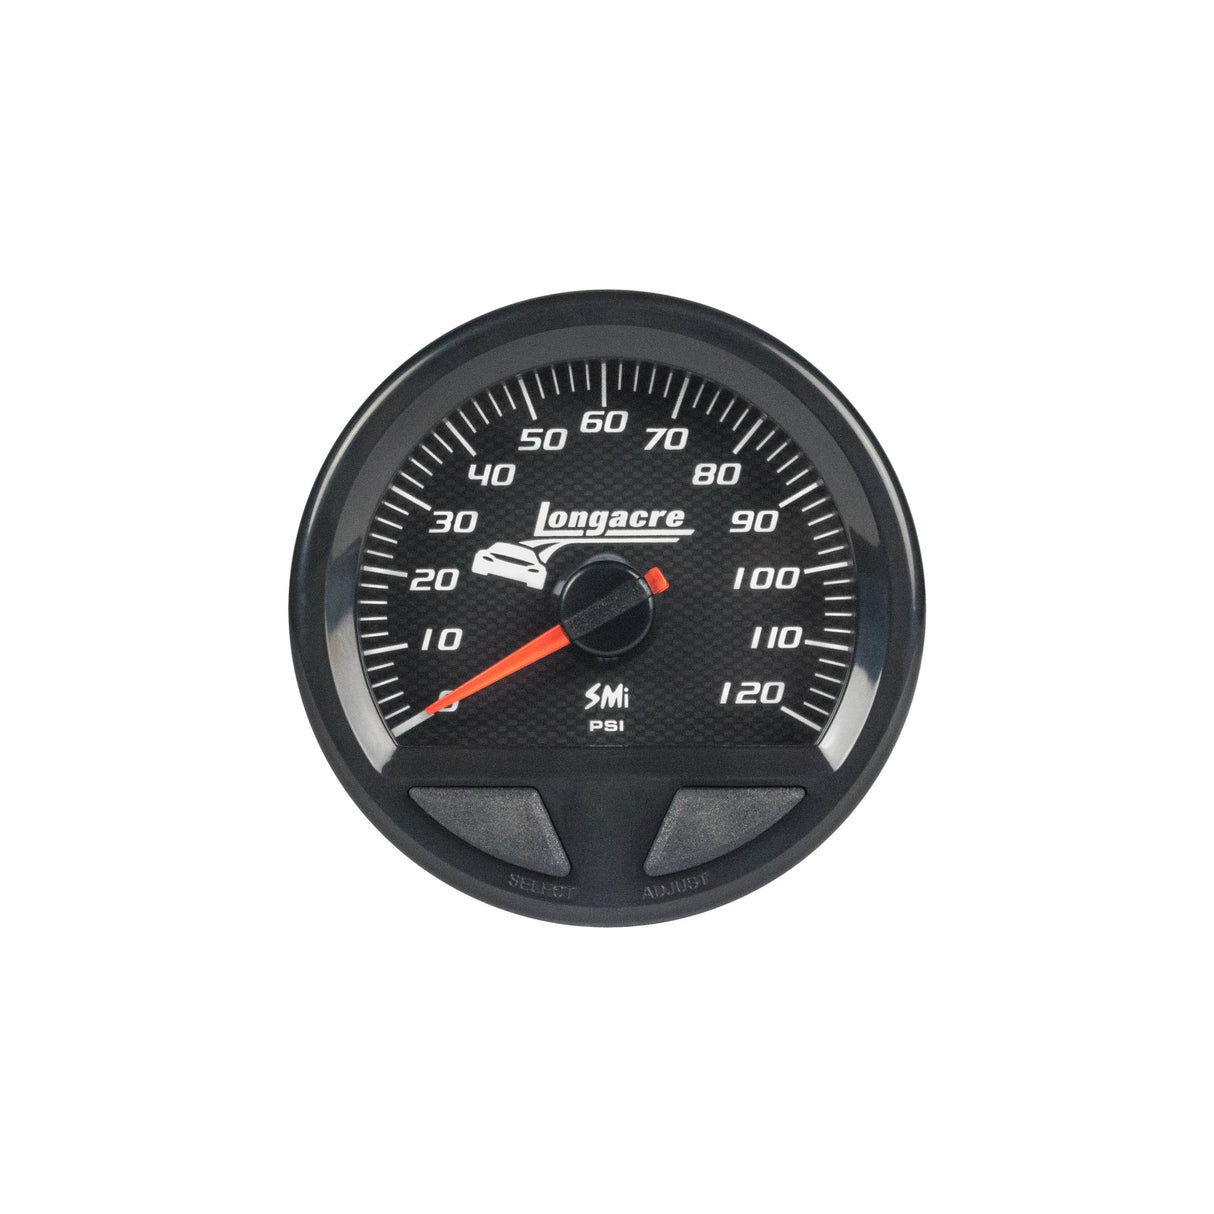 Waterproof SMI Fuel Pressure Gauge 0-100psi - VELA AUTO 